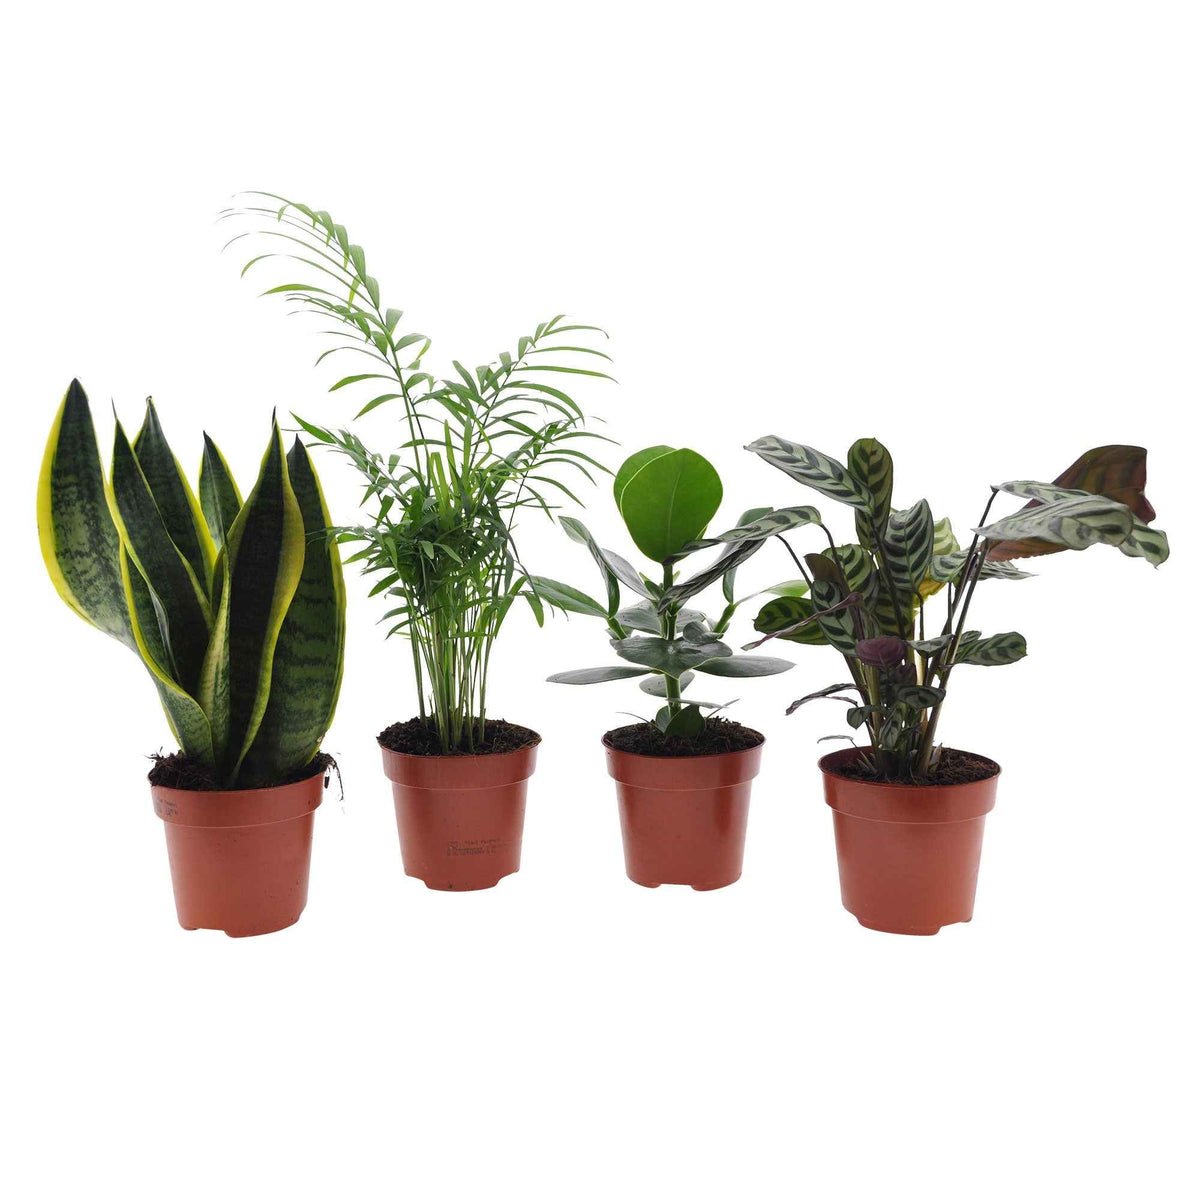 Collection de 4 plantes d'intérieur faciles -  clusia, chamaedorea, ctenanthe burle marxii, sansevieria - Plantes